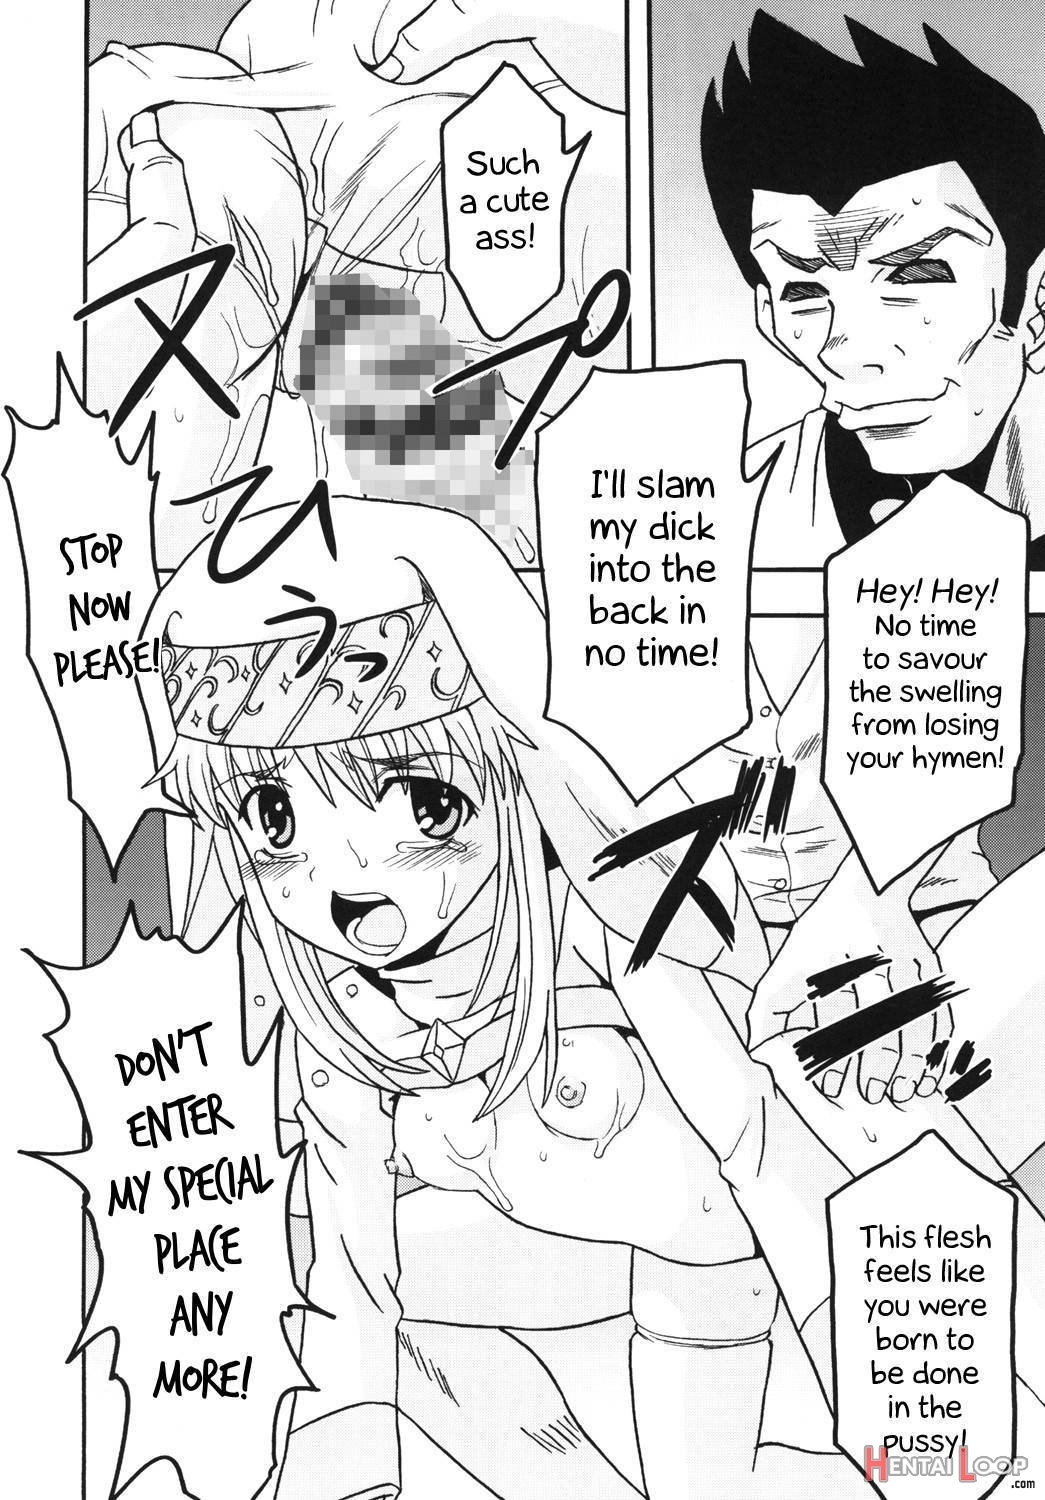 Toaru Otaku no Index #1 page 11